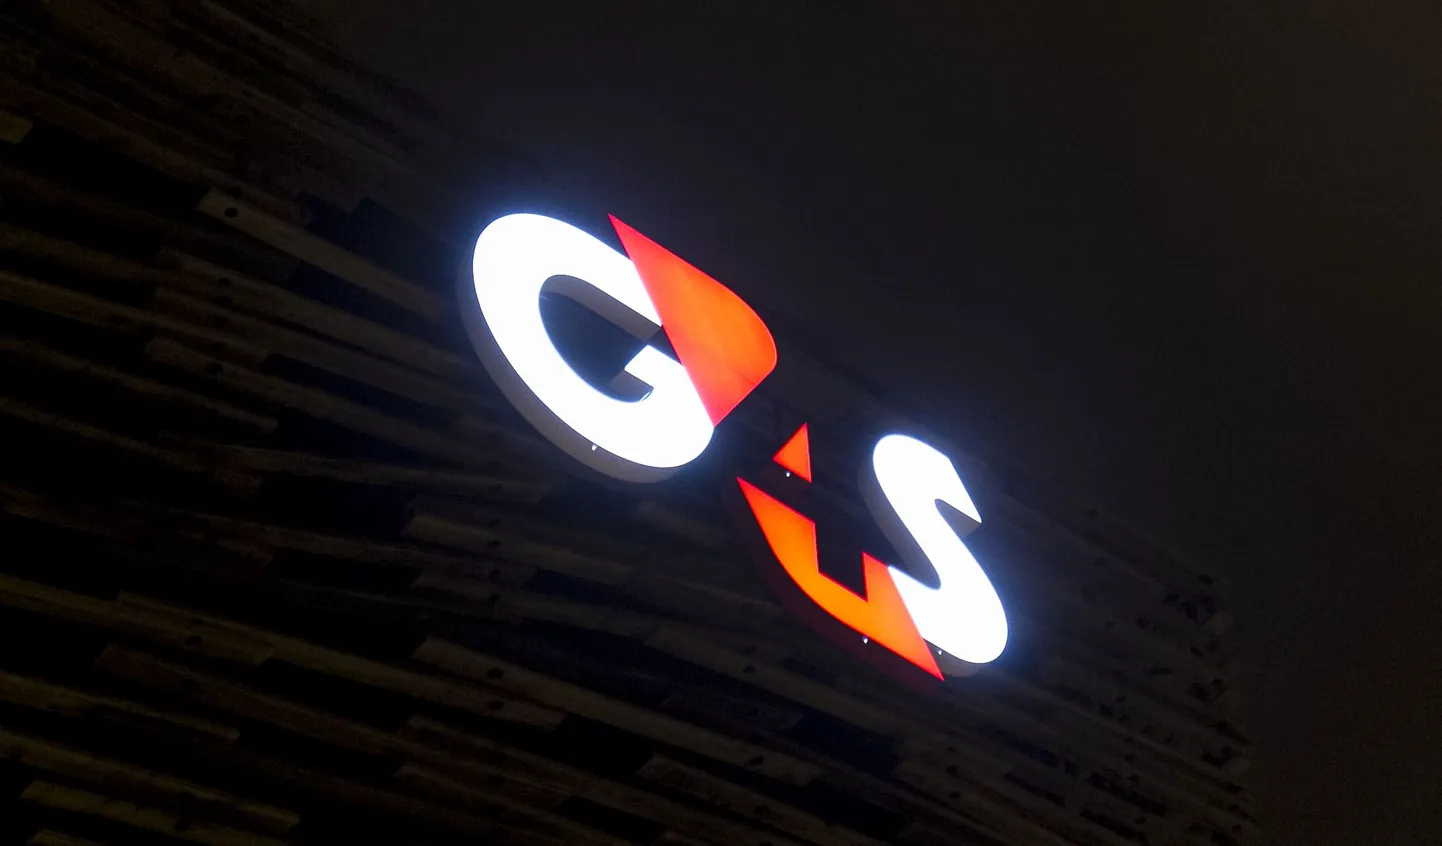 G4S.